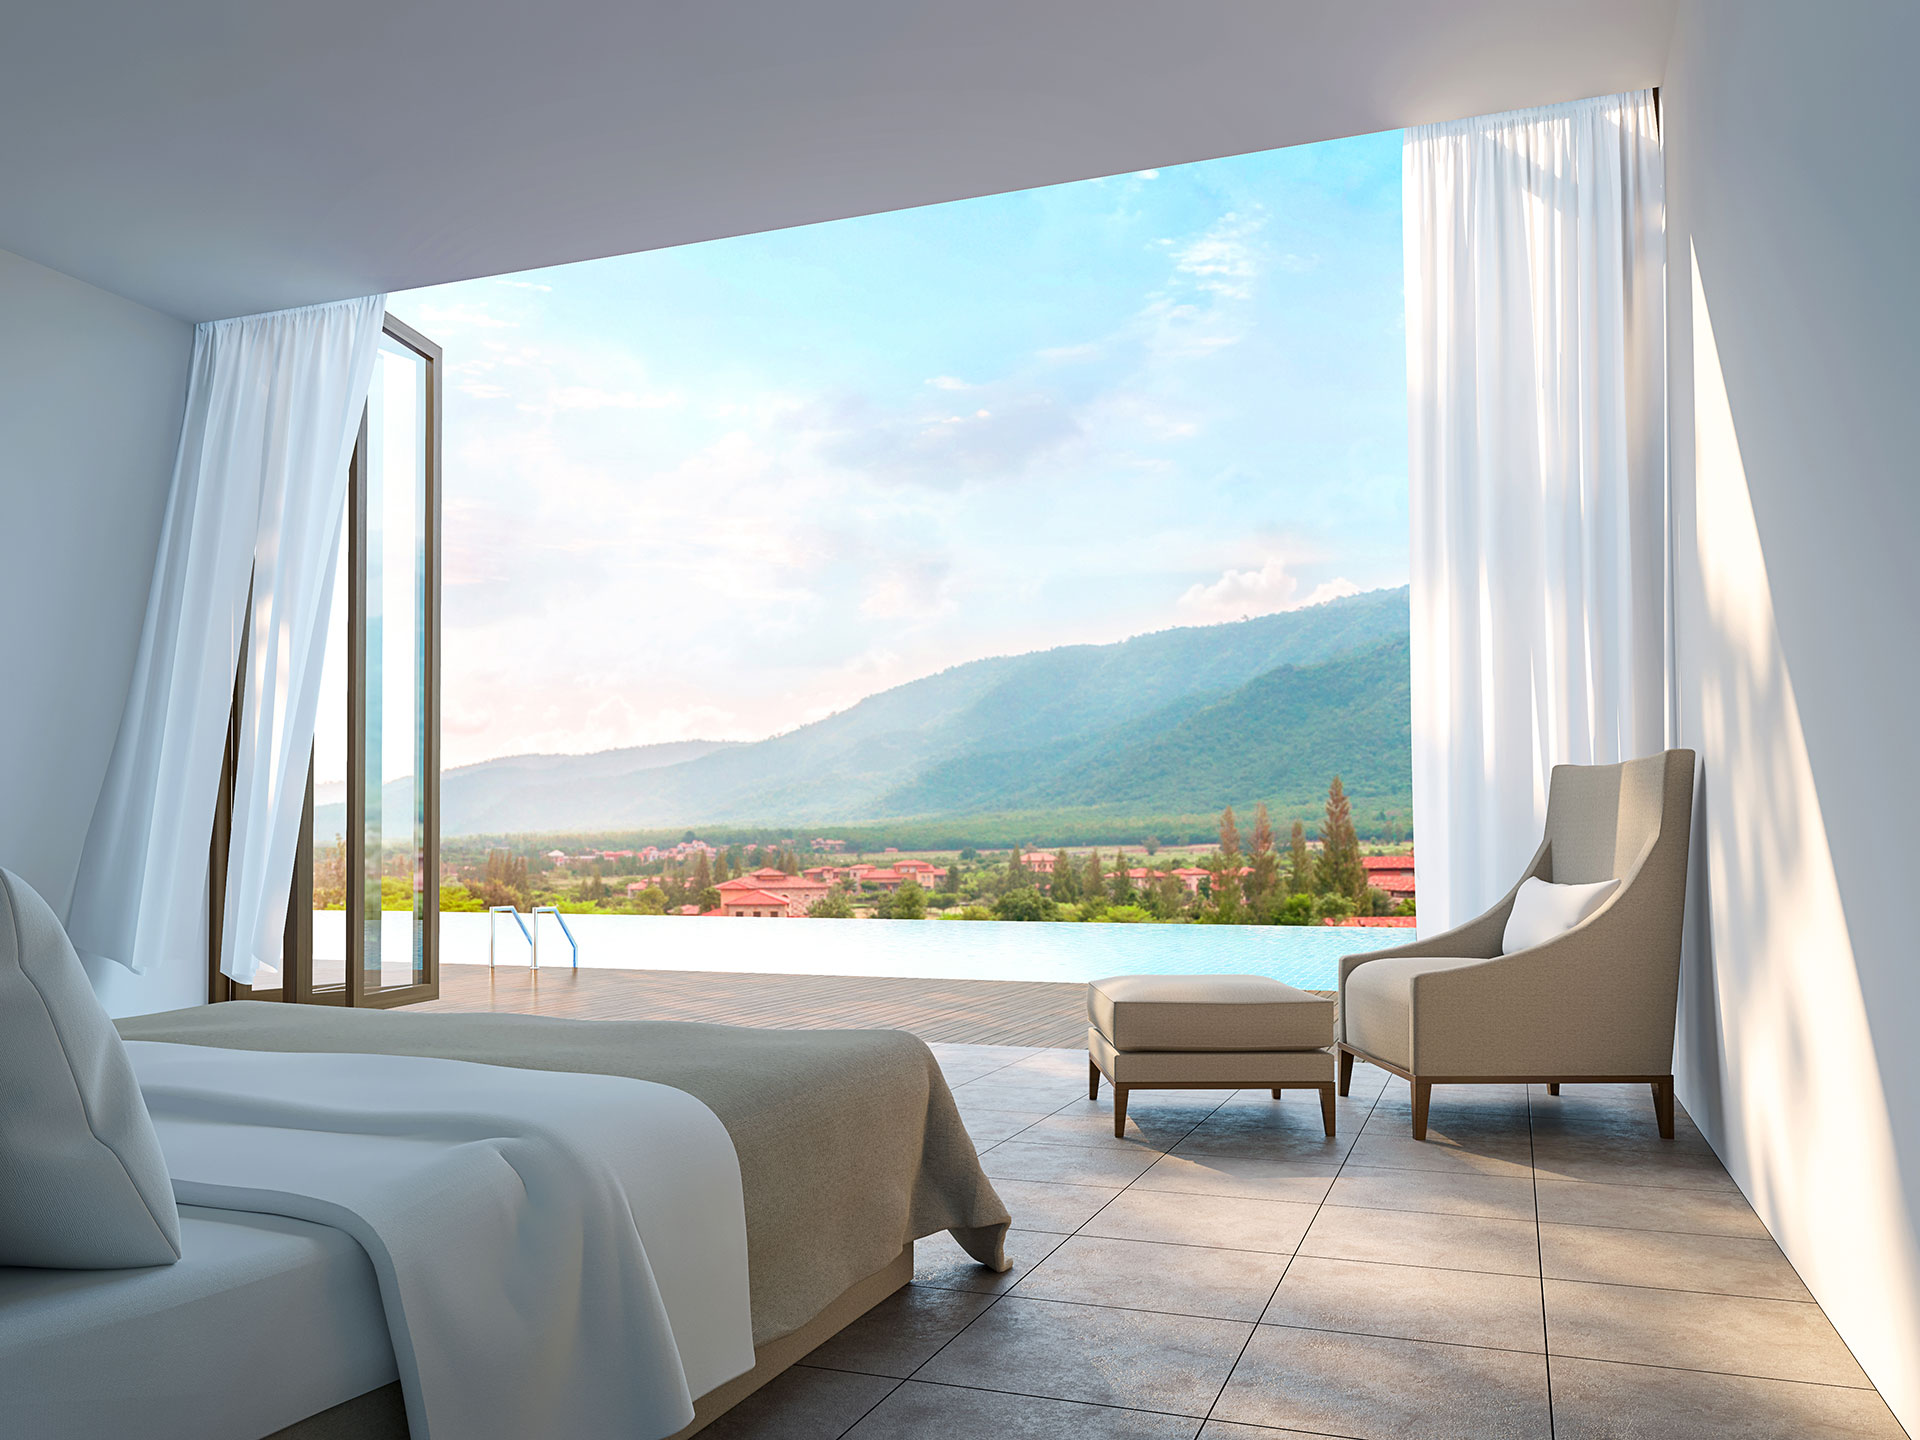 Modern bedroom render with open patio door view of mountains